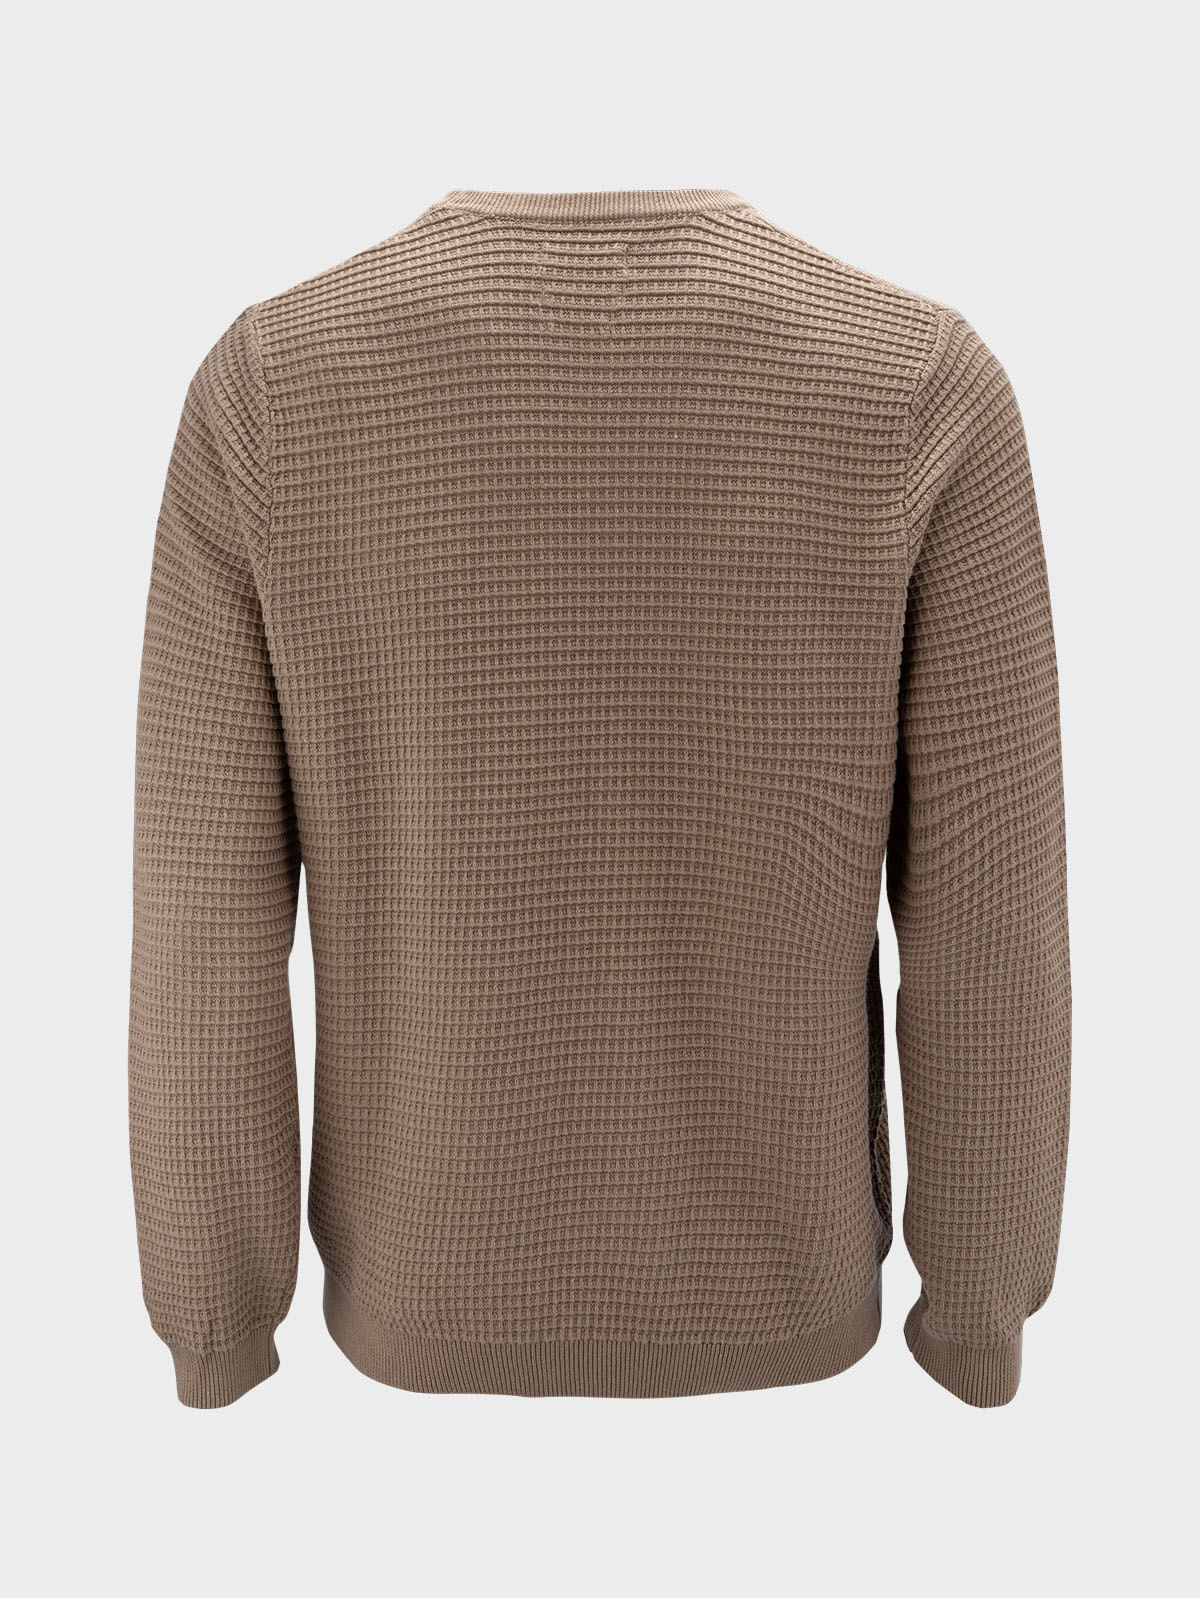 Sweater Hombre Liso Cuello Redondo Premium Importado